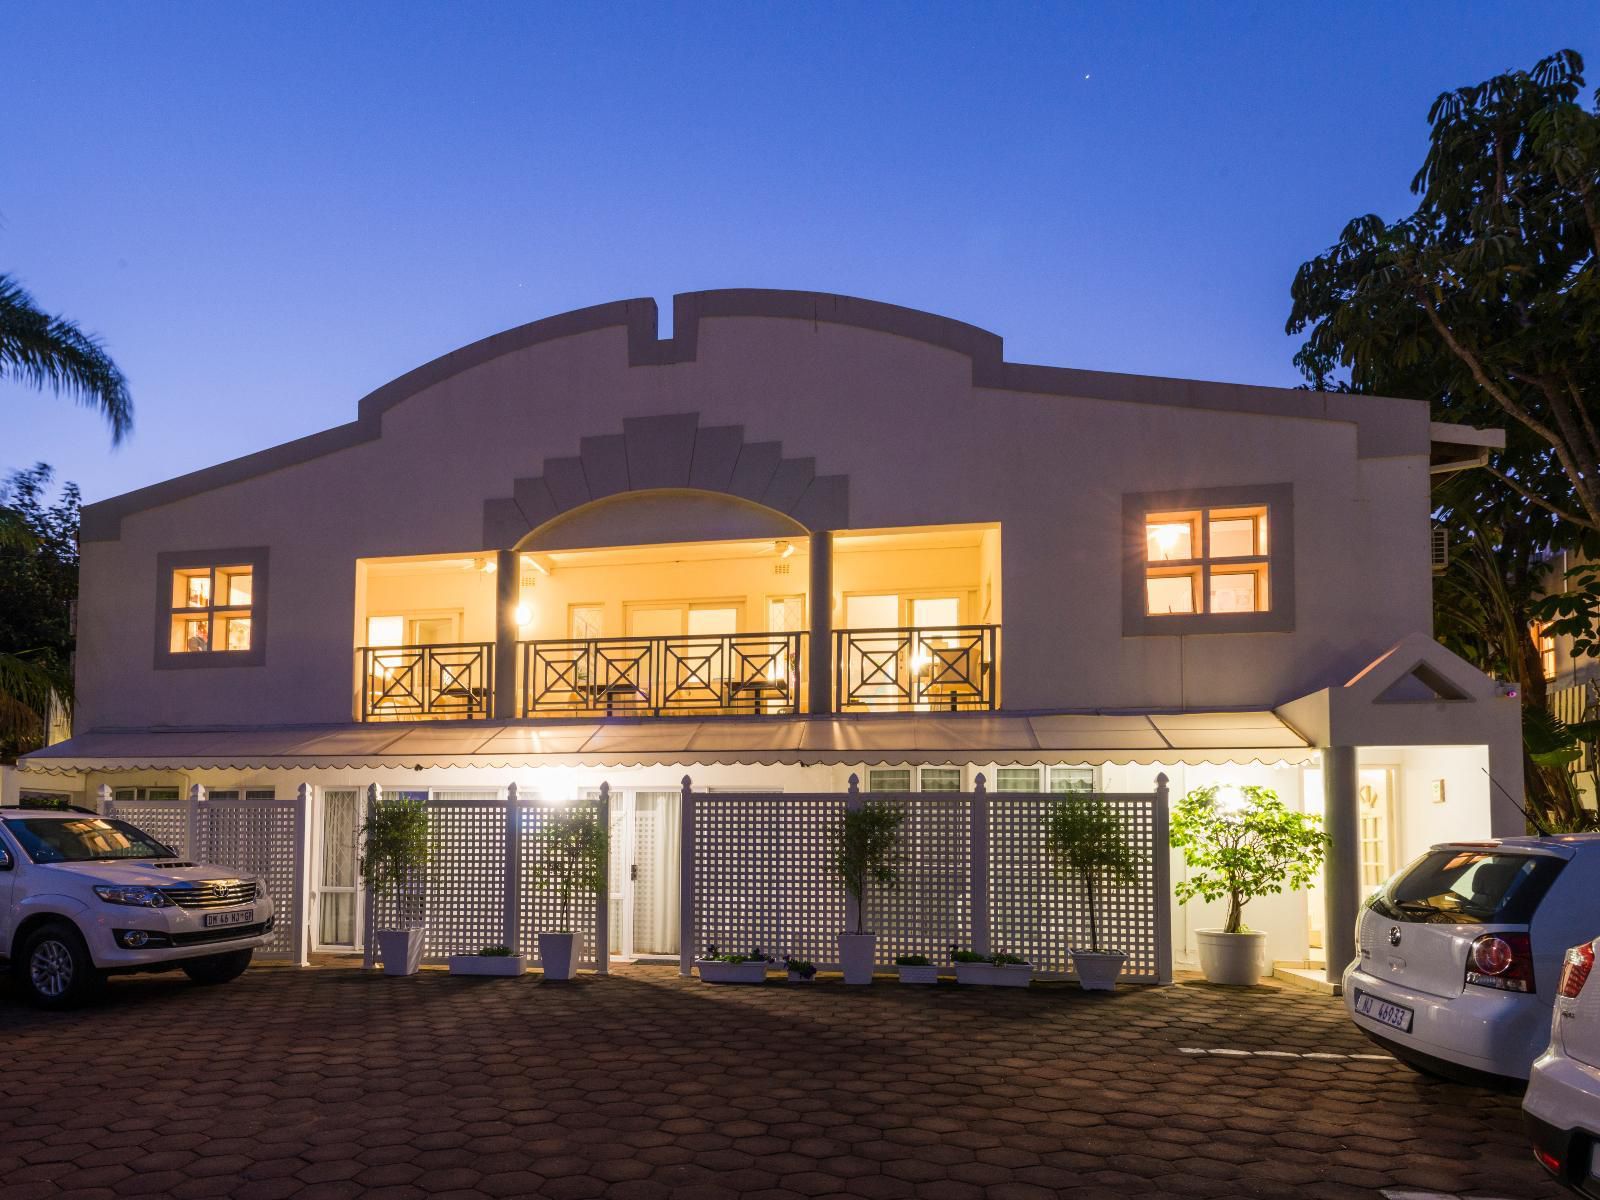 Flamingo Lodge Umhlanga Durban Kwazulu Natal South Africa House, Building, Architecture, Car, Vehicle